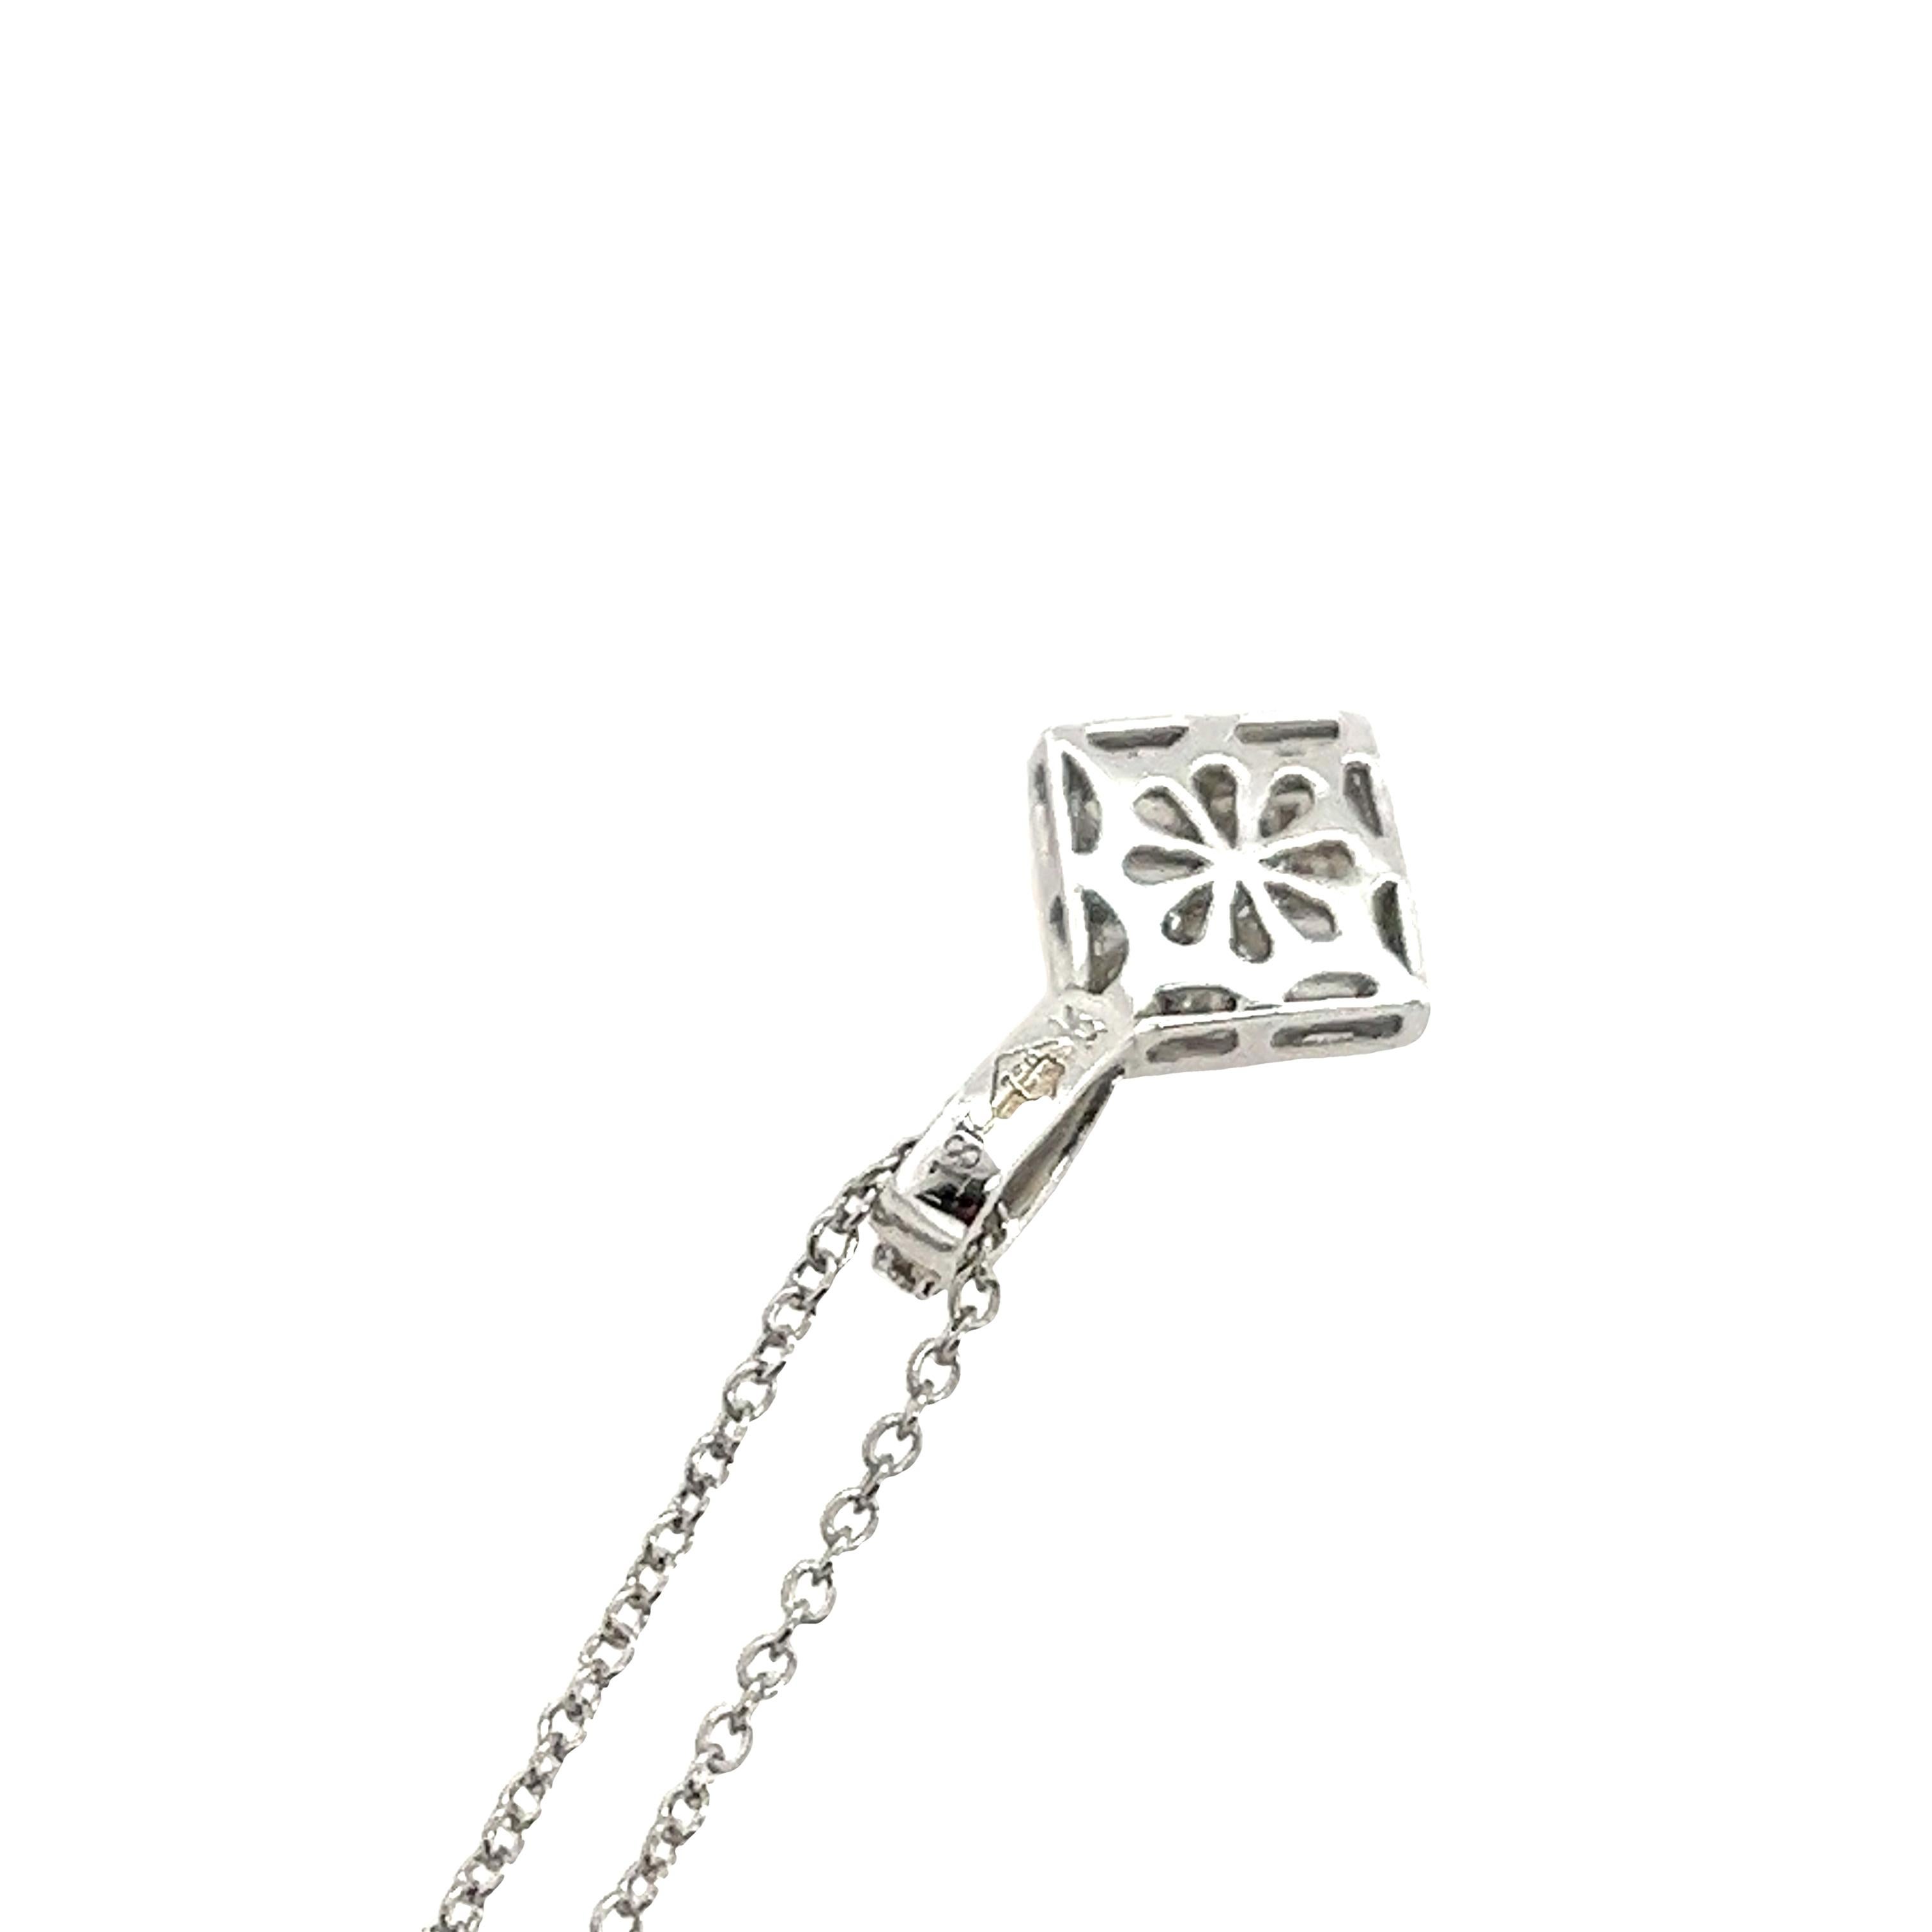 Cette chaîne de collier est conçue pour maintenir le pendentif au centre de la poitrine, serti de 12 diamants ronds de taille brillant et de 4 diamants baguettes de 0,25ct H/SI1.
Il s'agit d'un bijou très élégant et magnifique, parfait pour être